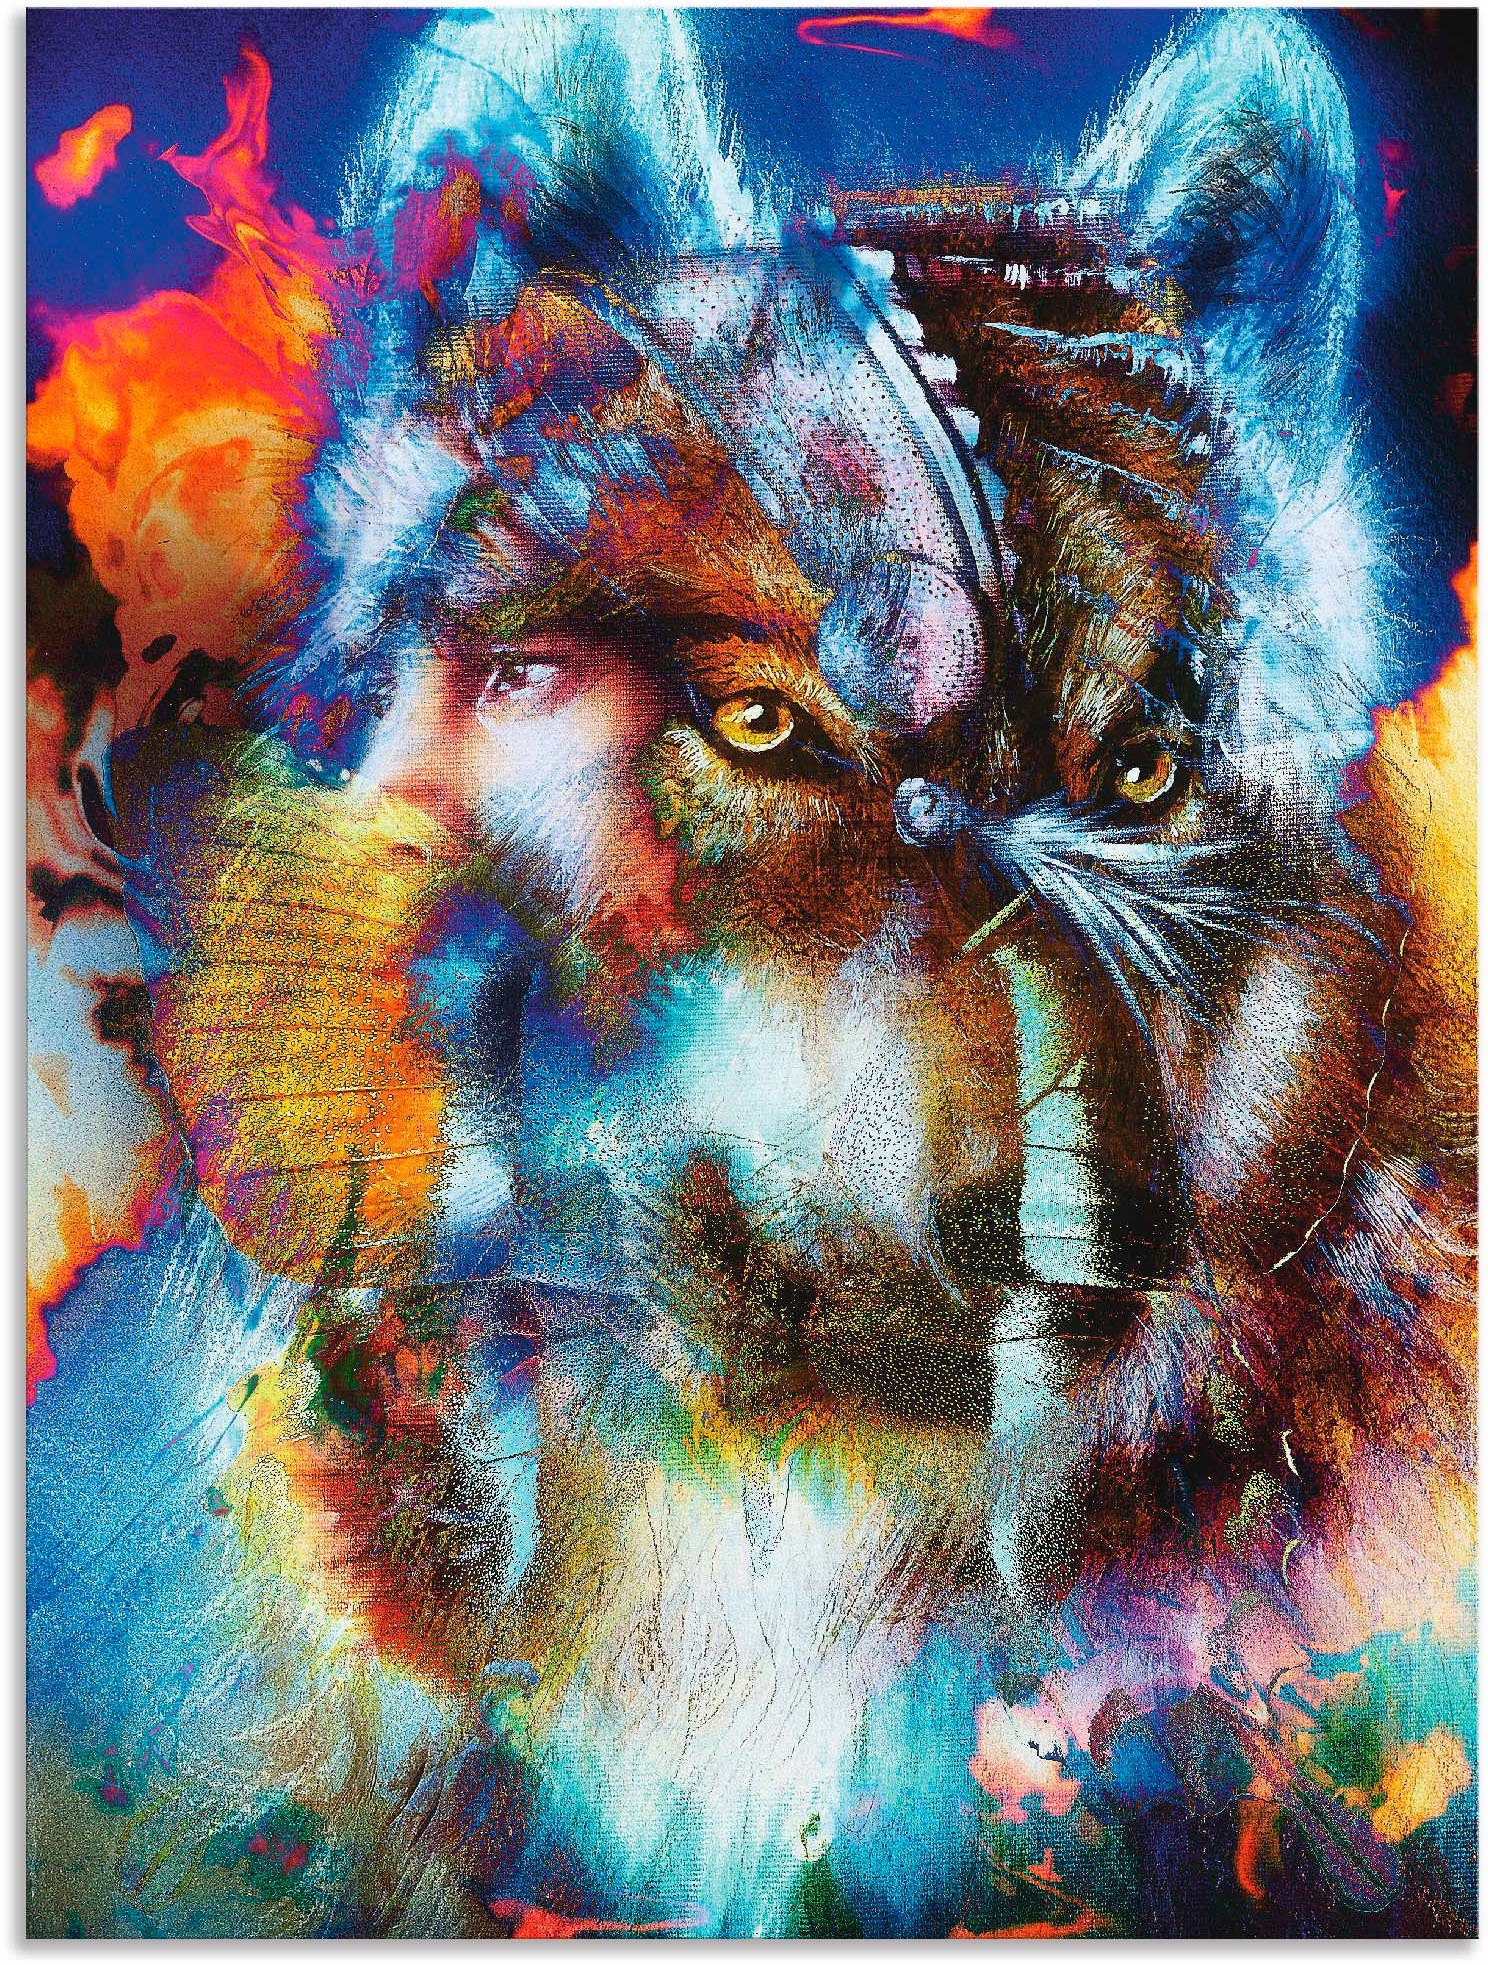 Artland Artprint Indiase Krijger met wolf in vele afmetingen & productsoorten - artprint van aluminium / artprint voor buiten, artprint op linnen, poster, muursticker / wandfolie o